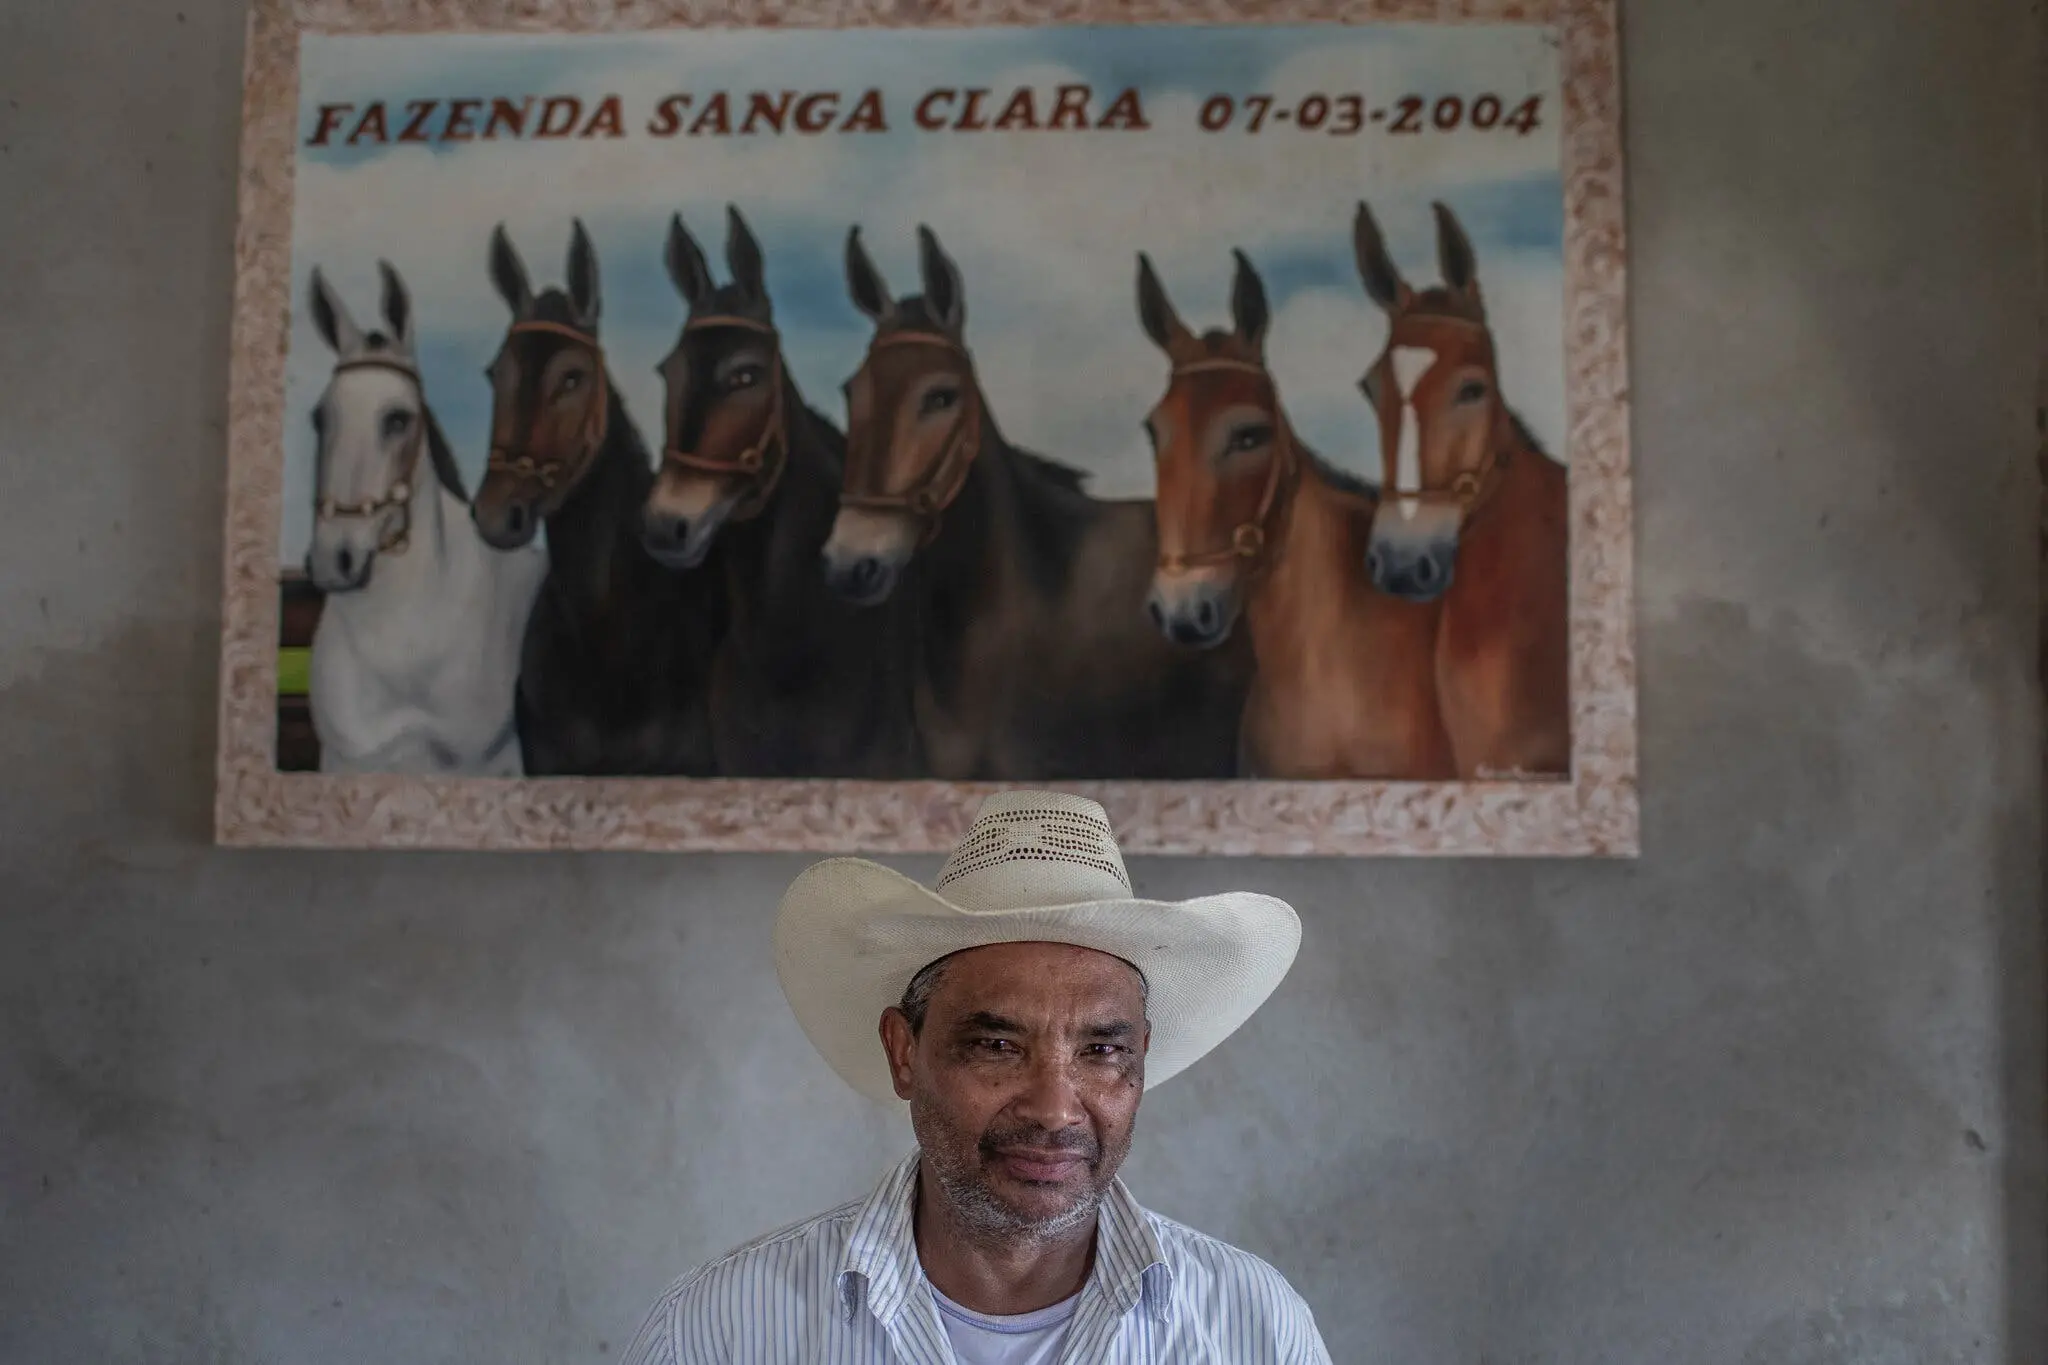 Odilon Caetano Felipe, a rancher